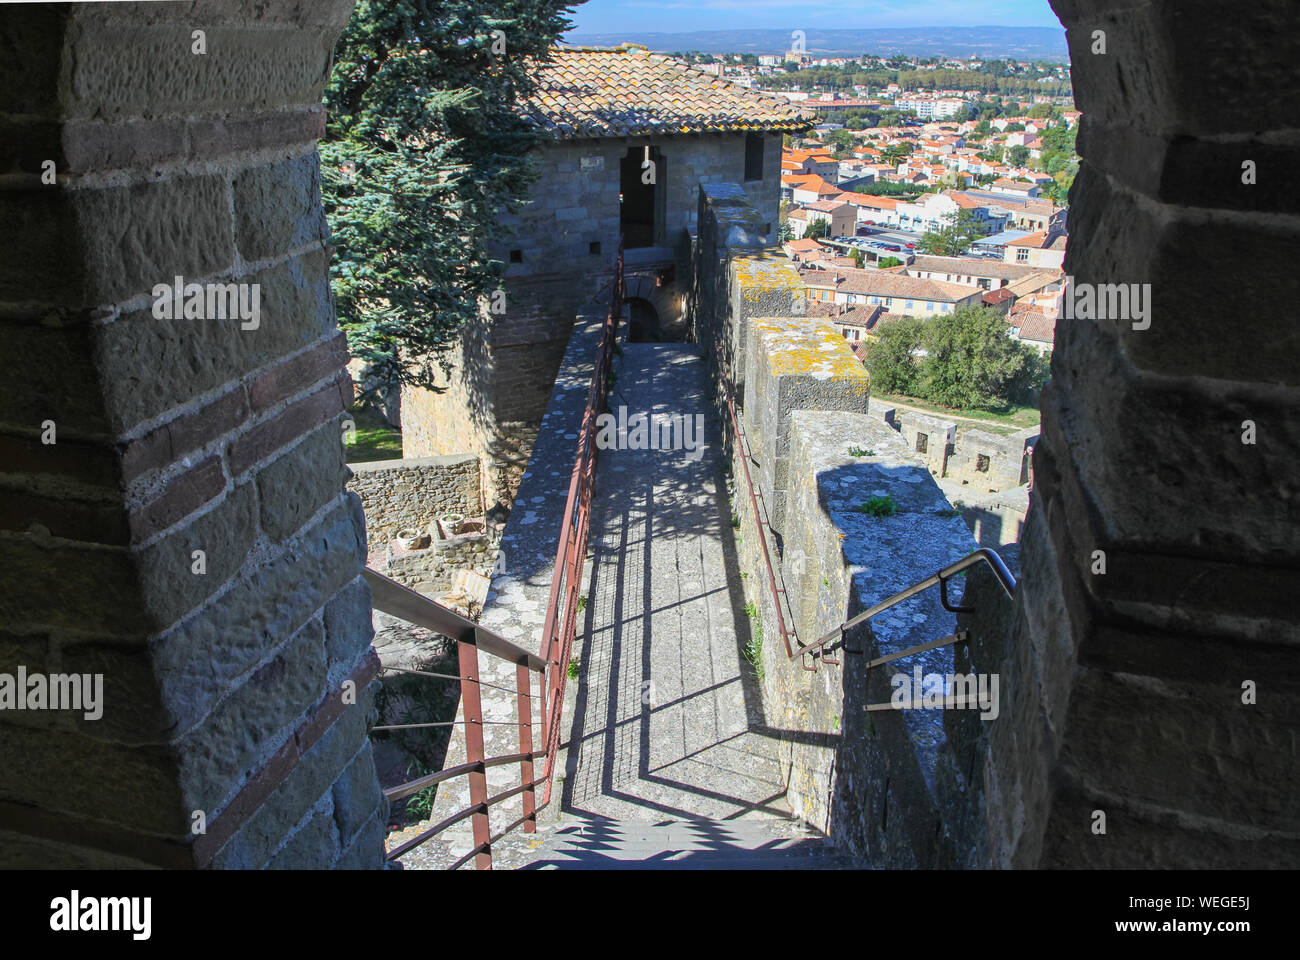 Gehweg auf Zinnen perimeter Wall Wand- und Zinnen, mit Sicherheit Handlauf Geländer. Die mittelalterliche Stadt Carcassonne, Frankreich, Europa Stockfoto